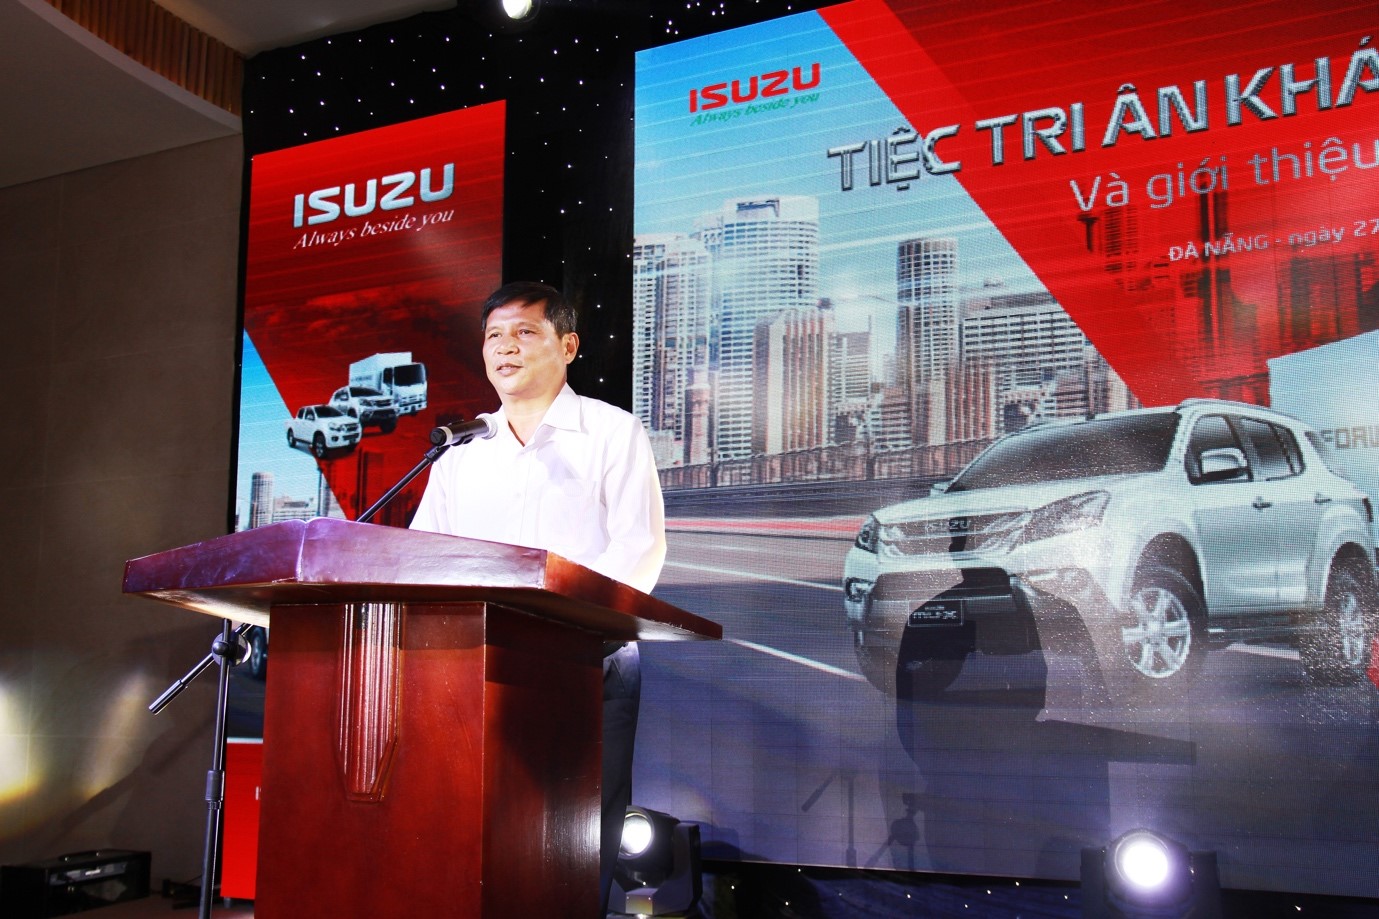 Ông Nguyễn Duy Thiện - Đại diện khách hàng chia sẻ về sản phẩm ISUZU.